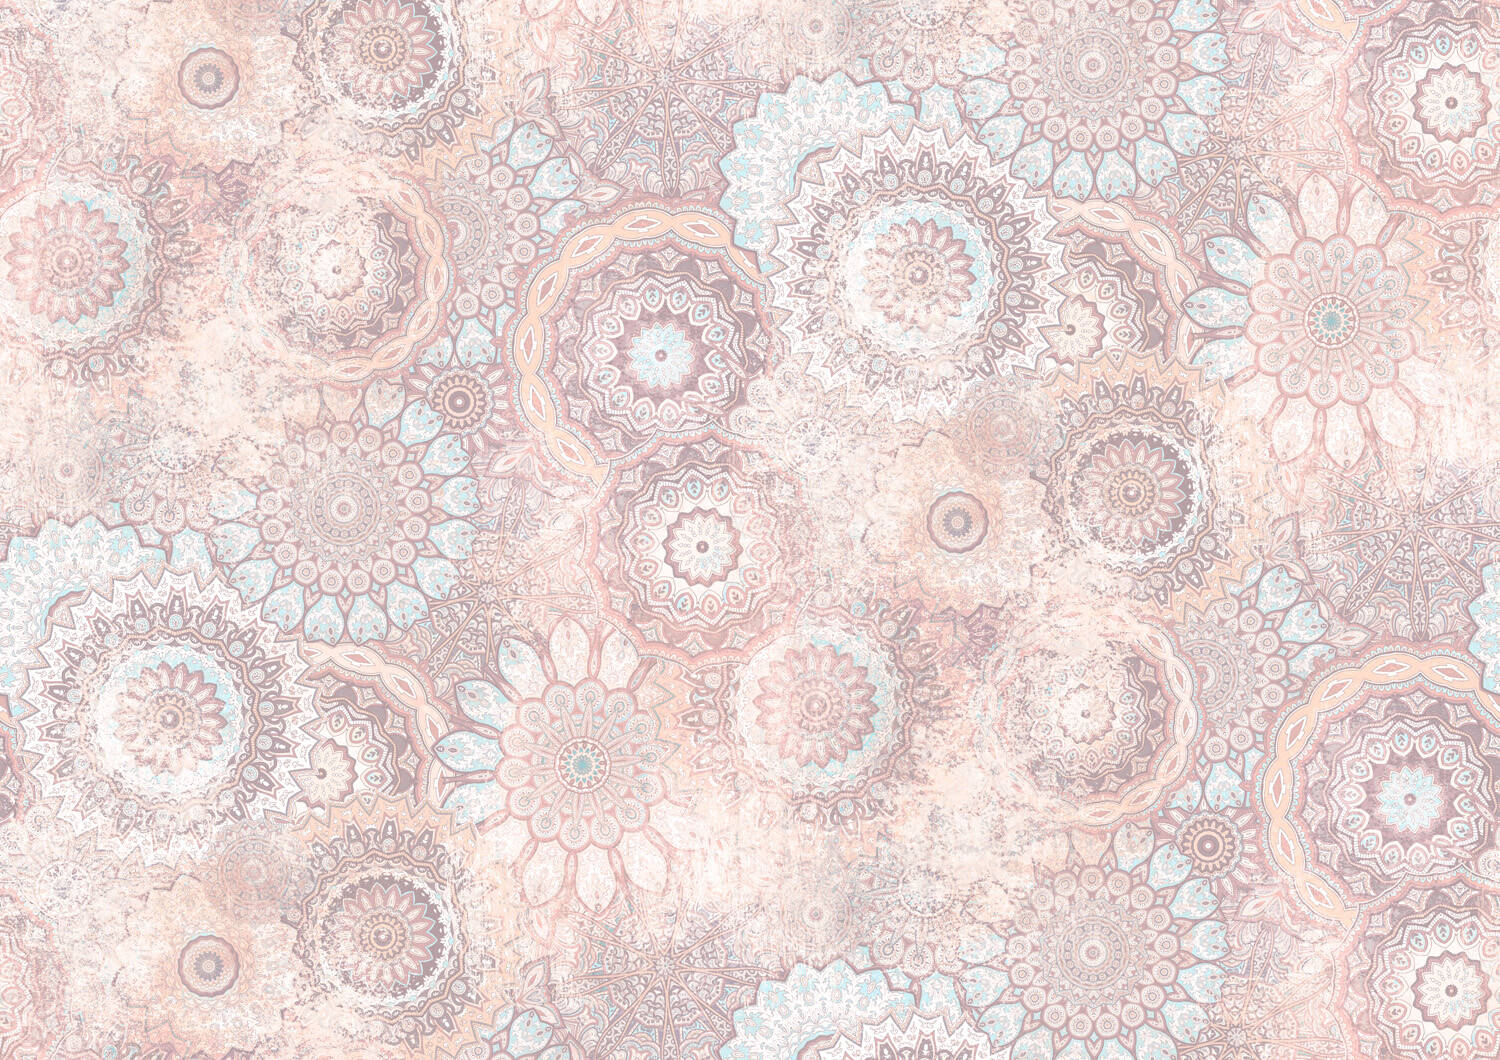 Wandbild - Prallvolle Mandala-Sammlung in Pastellblau, -creme und -rosa mit wash-out-Effekten